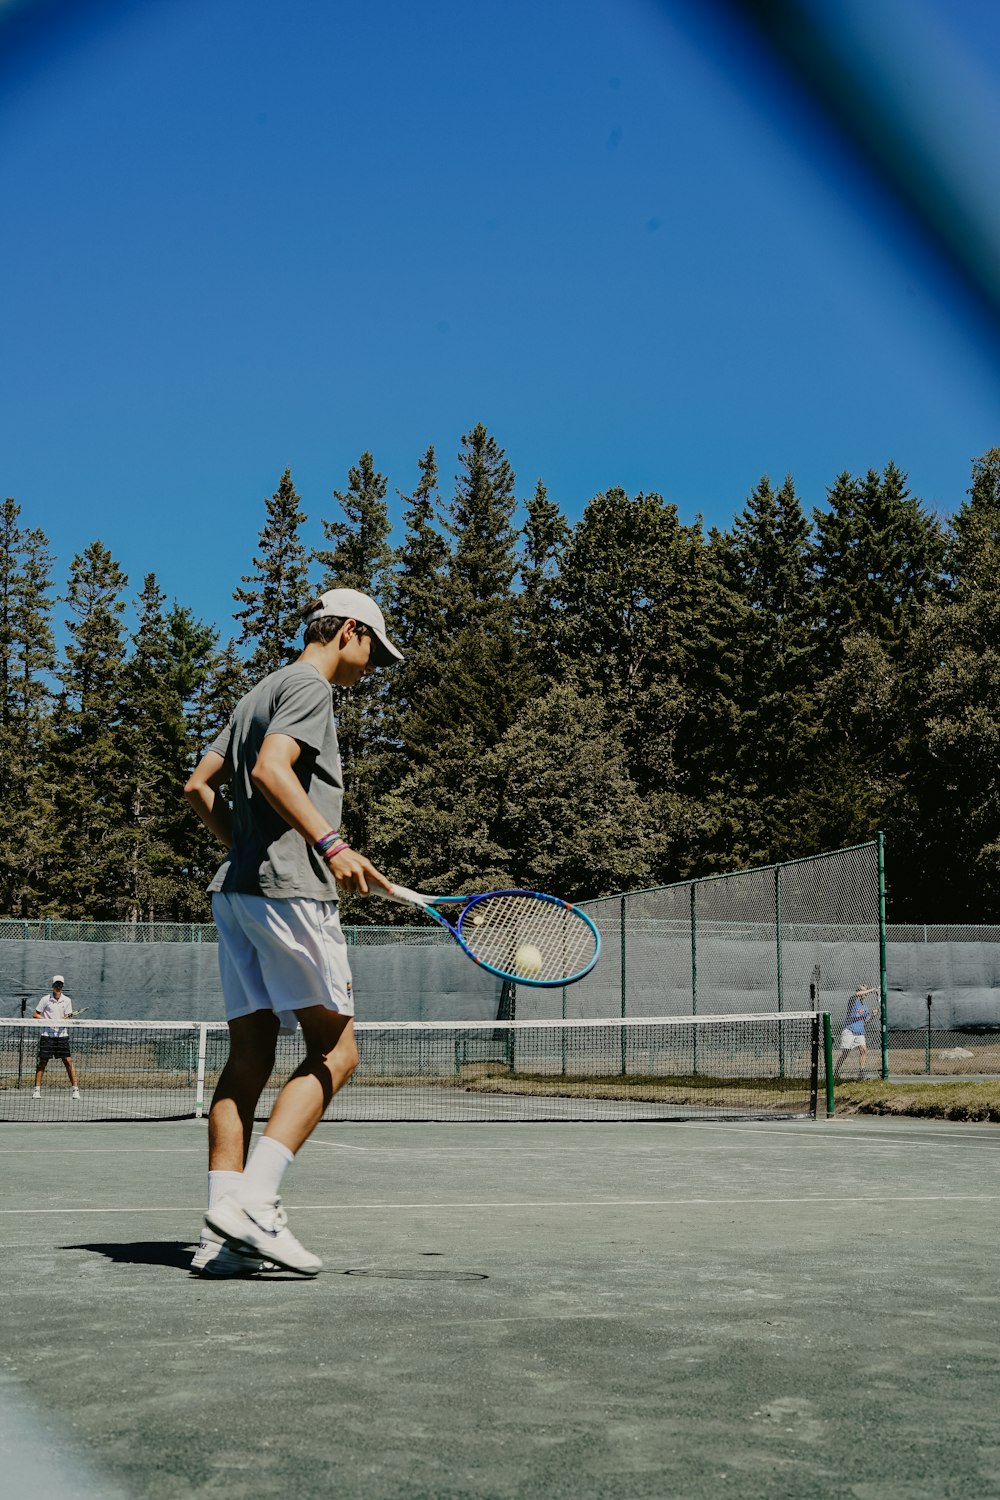 Man playing tennis photo – Free Tennis Image on Unsplash